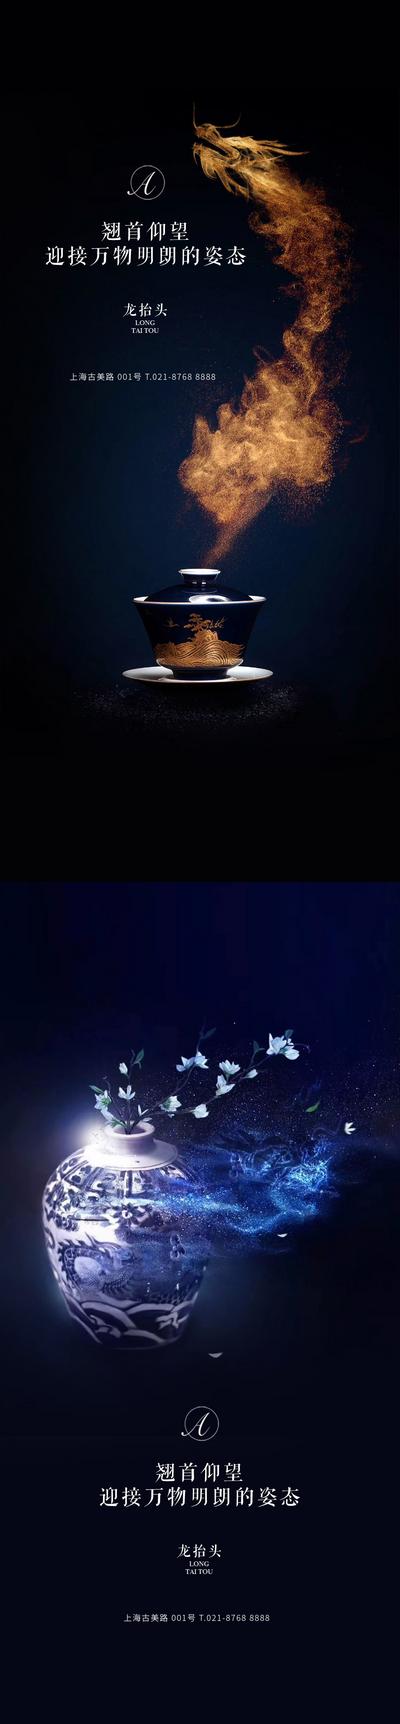 【南门网】海报 房地产 中国传统节日 龙抬头 瓷器 茶杯 龙 烟雾 